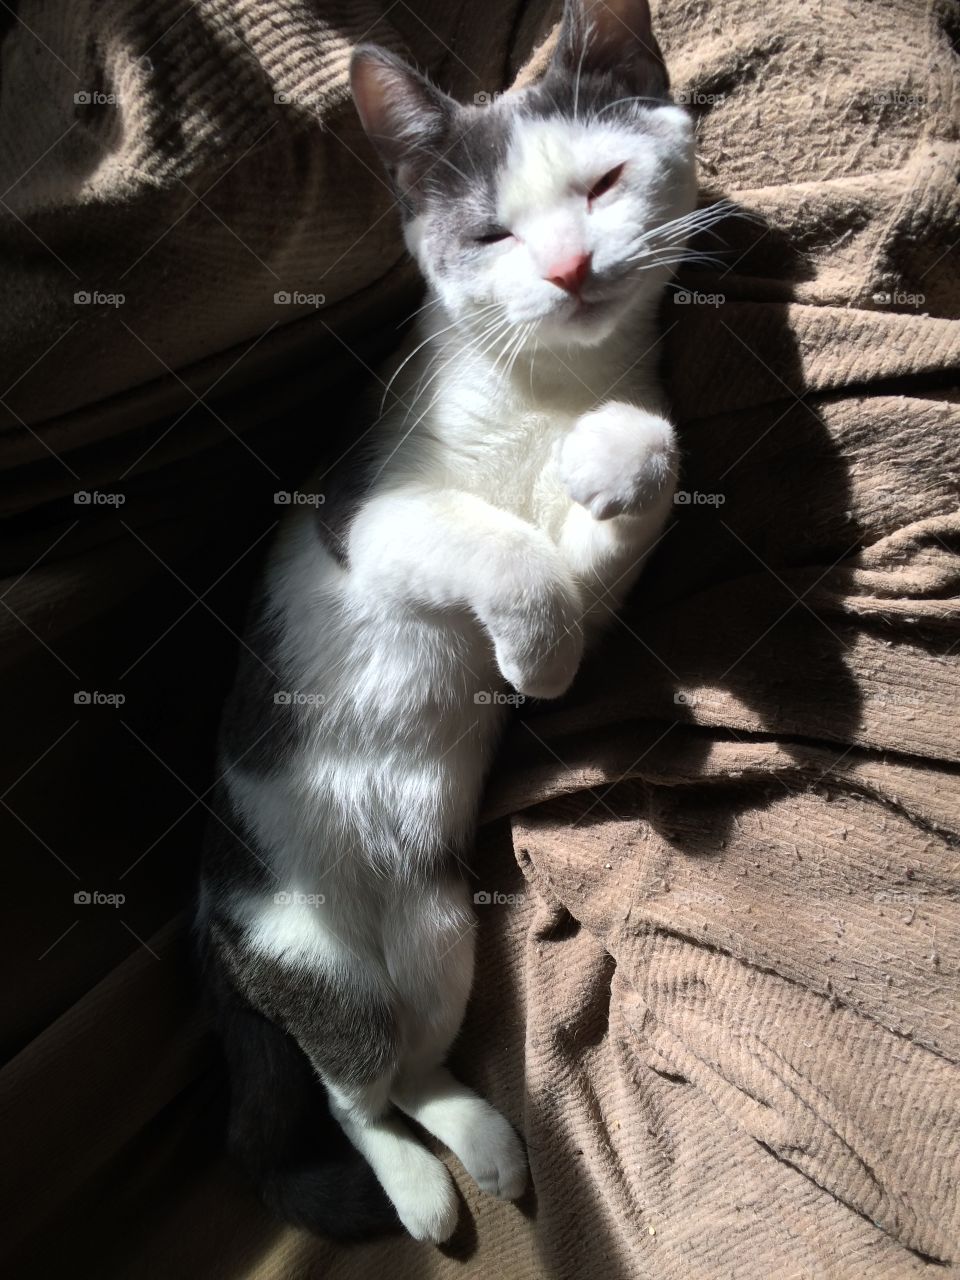 Kitten sunning
